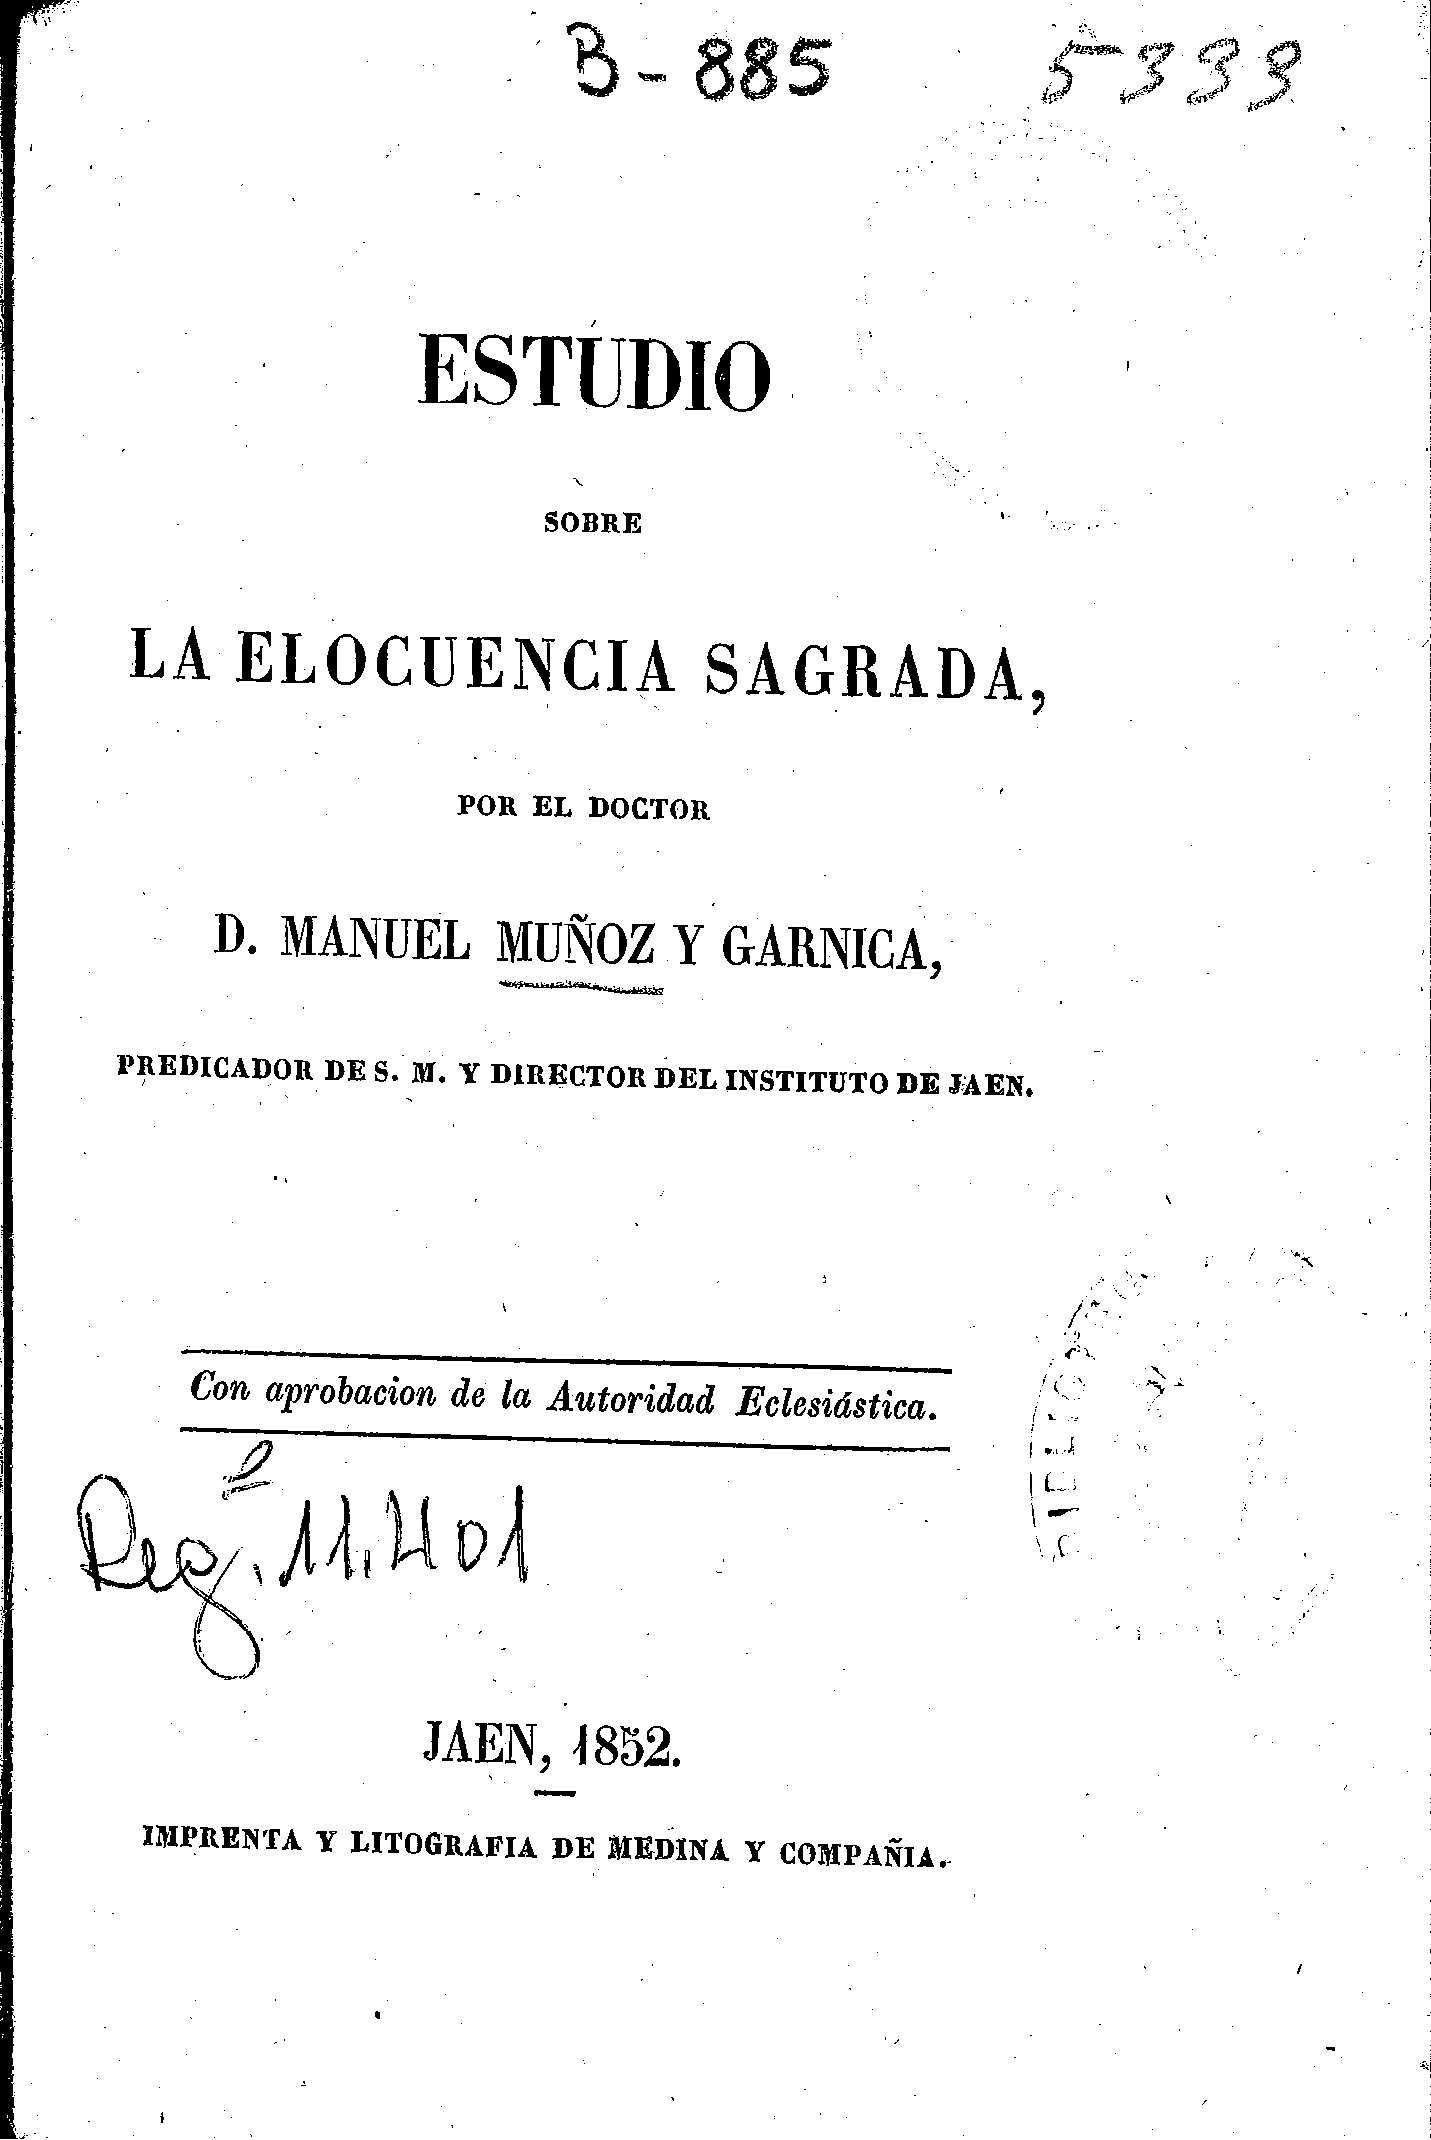 Estudio sobre la elocuencia sagrada, por el doctor D. Manuel Muñoz y Garnica, predicador de S. M. y director del Instituto de Jaén